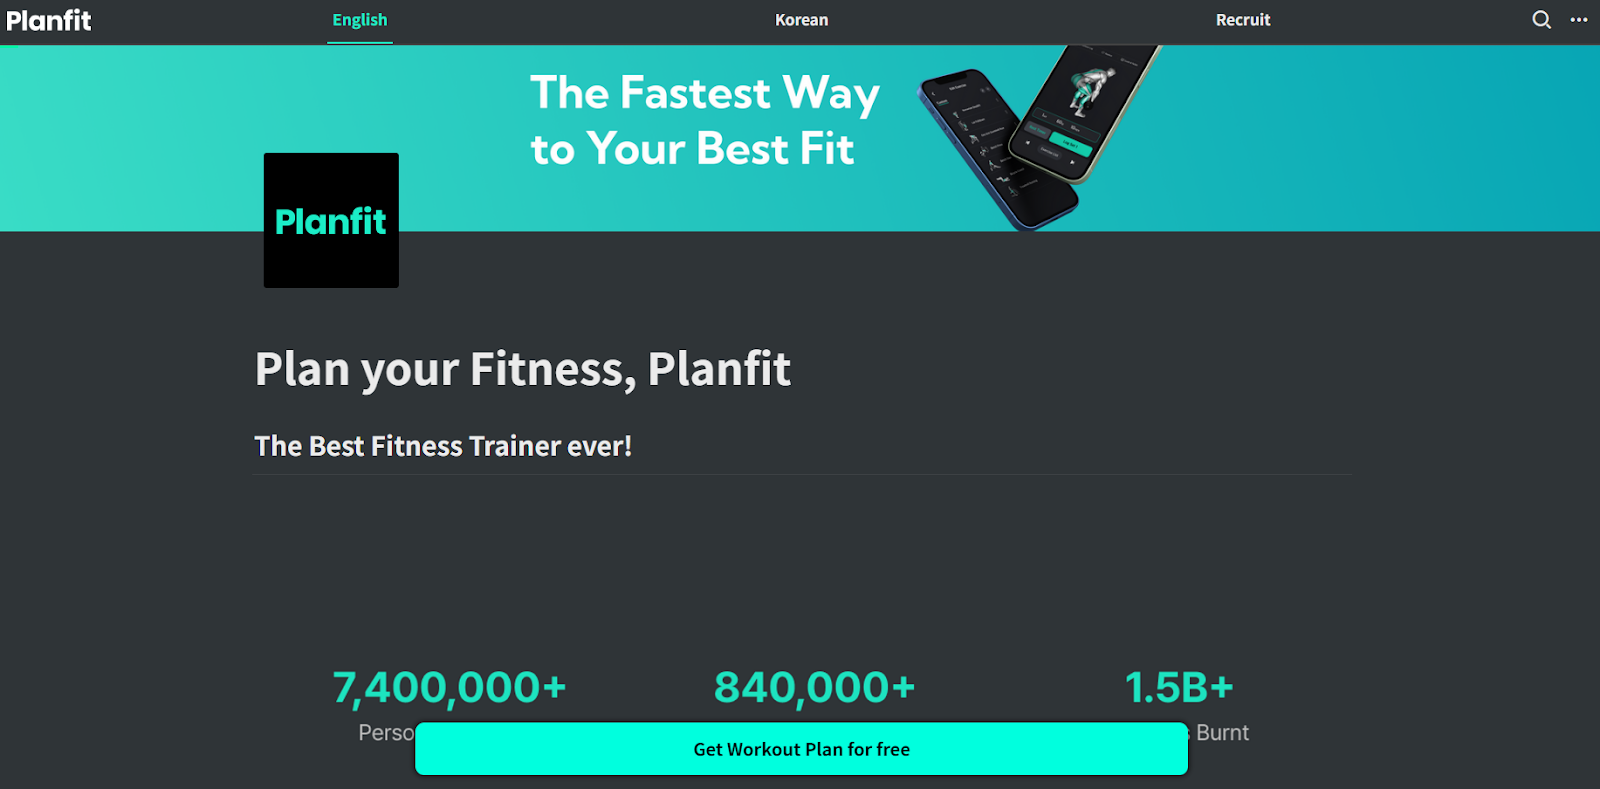 Planfit website - plan your fitness, planfit